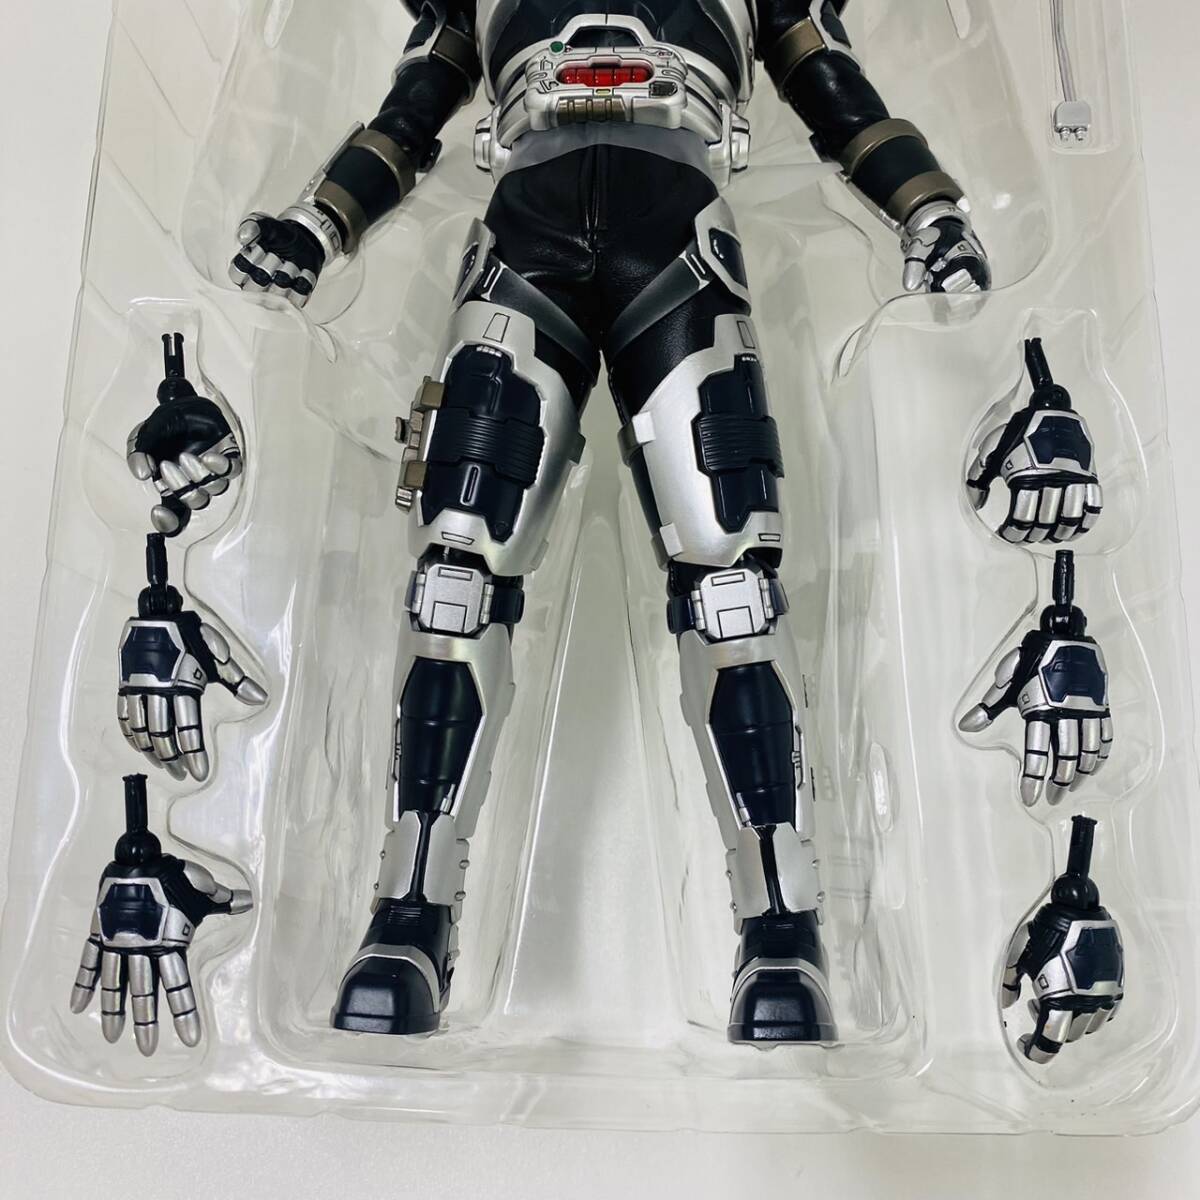 16217/ Kamen Rider G4 Agito Deluxe модель 2014 вне с коробкой спецэффекты фигурка Kamen Rider meti com игрушка 